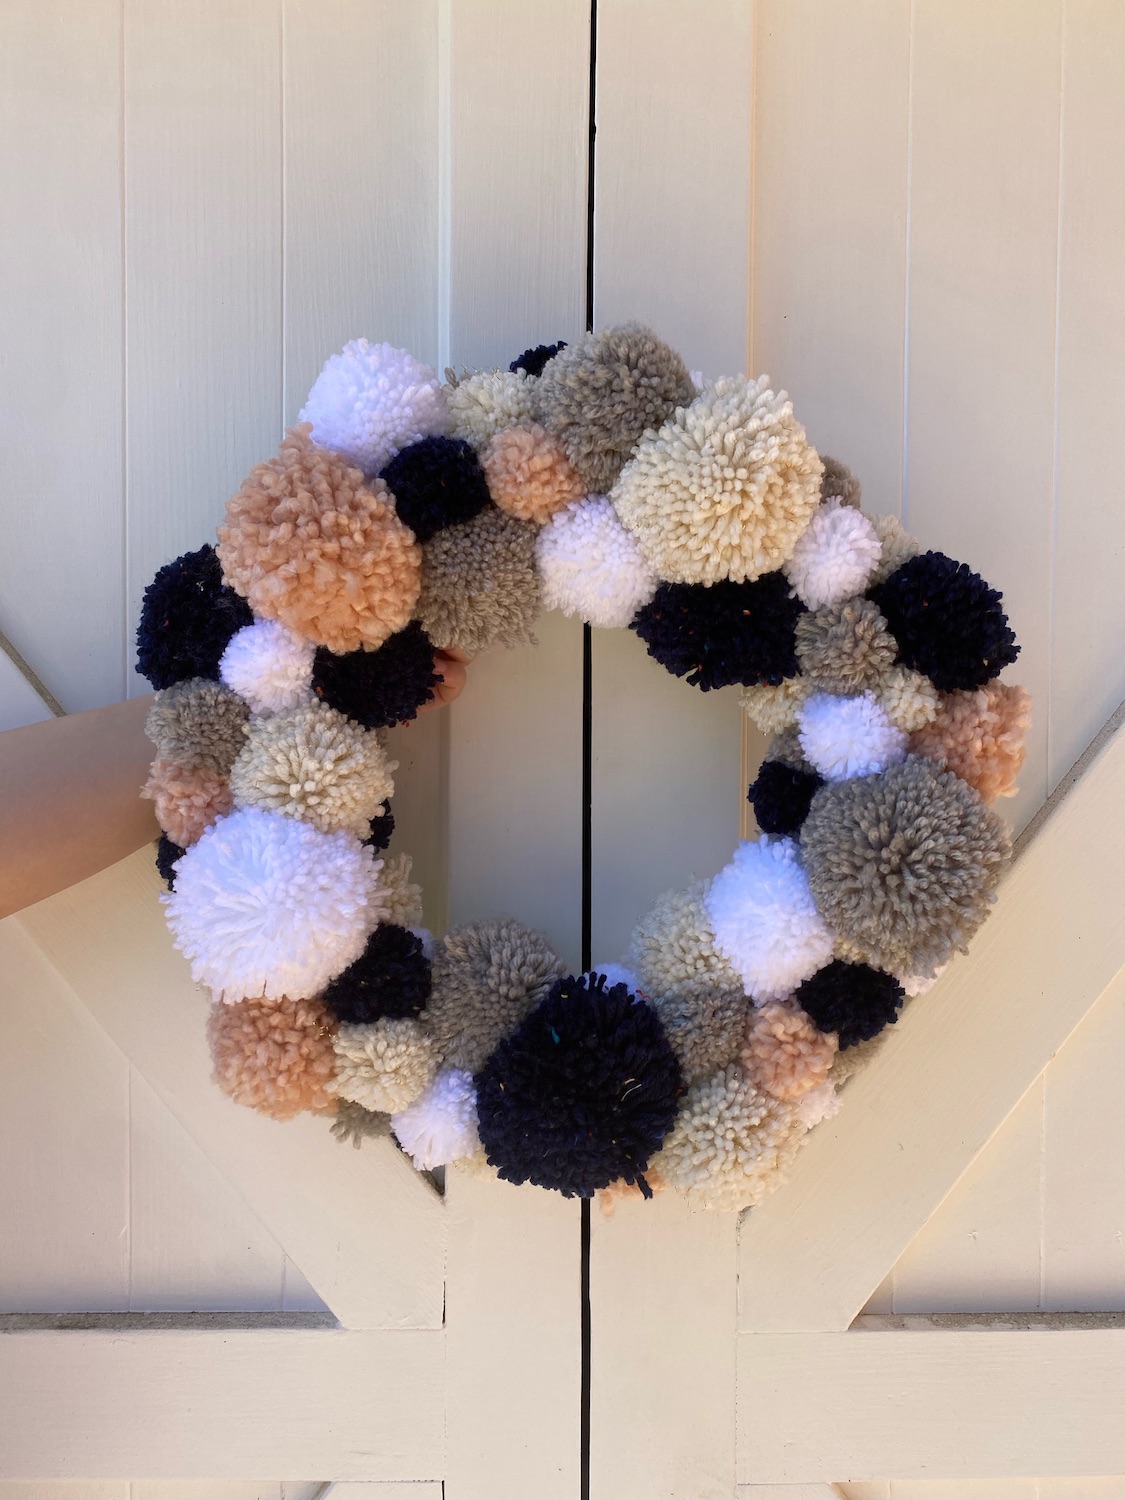 A Pinterest Party: DIY Pom Pom Wreaths - Elle & Jay